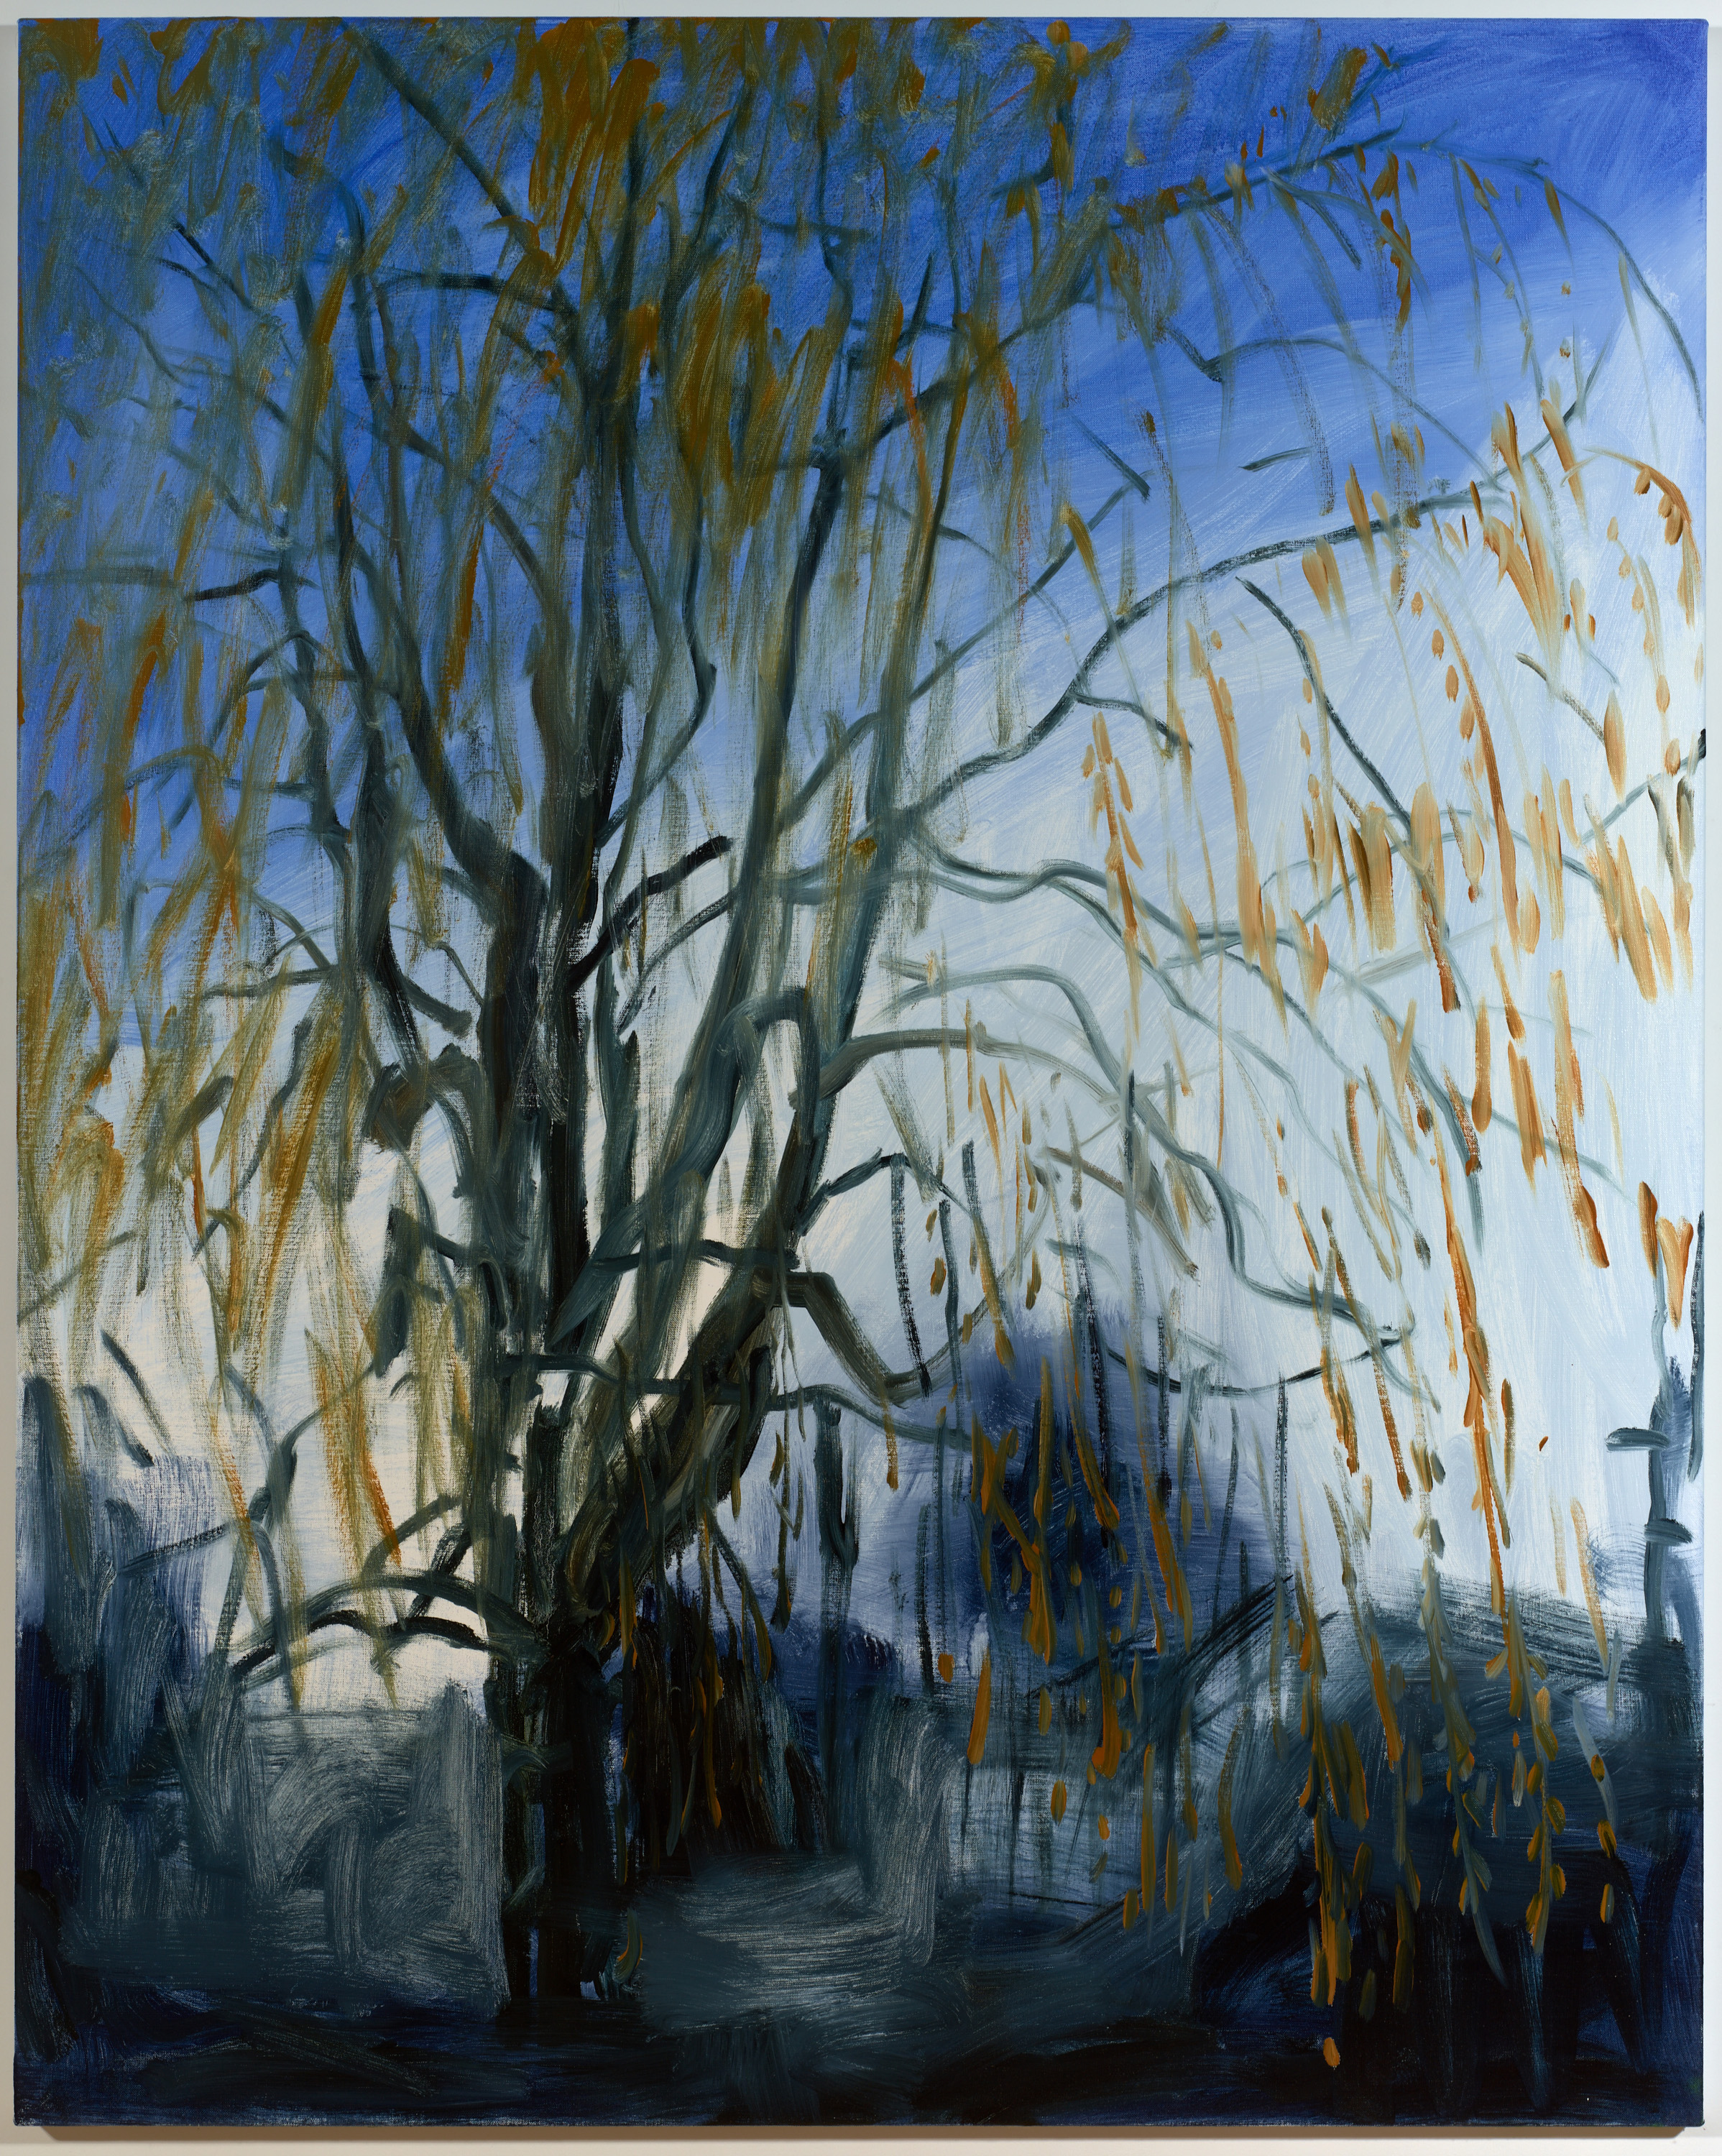 Jocelyn Tree, 2017, oil on linen, 60 x 48 inches